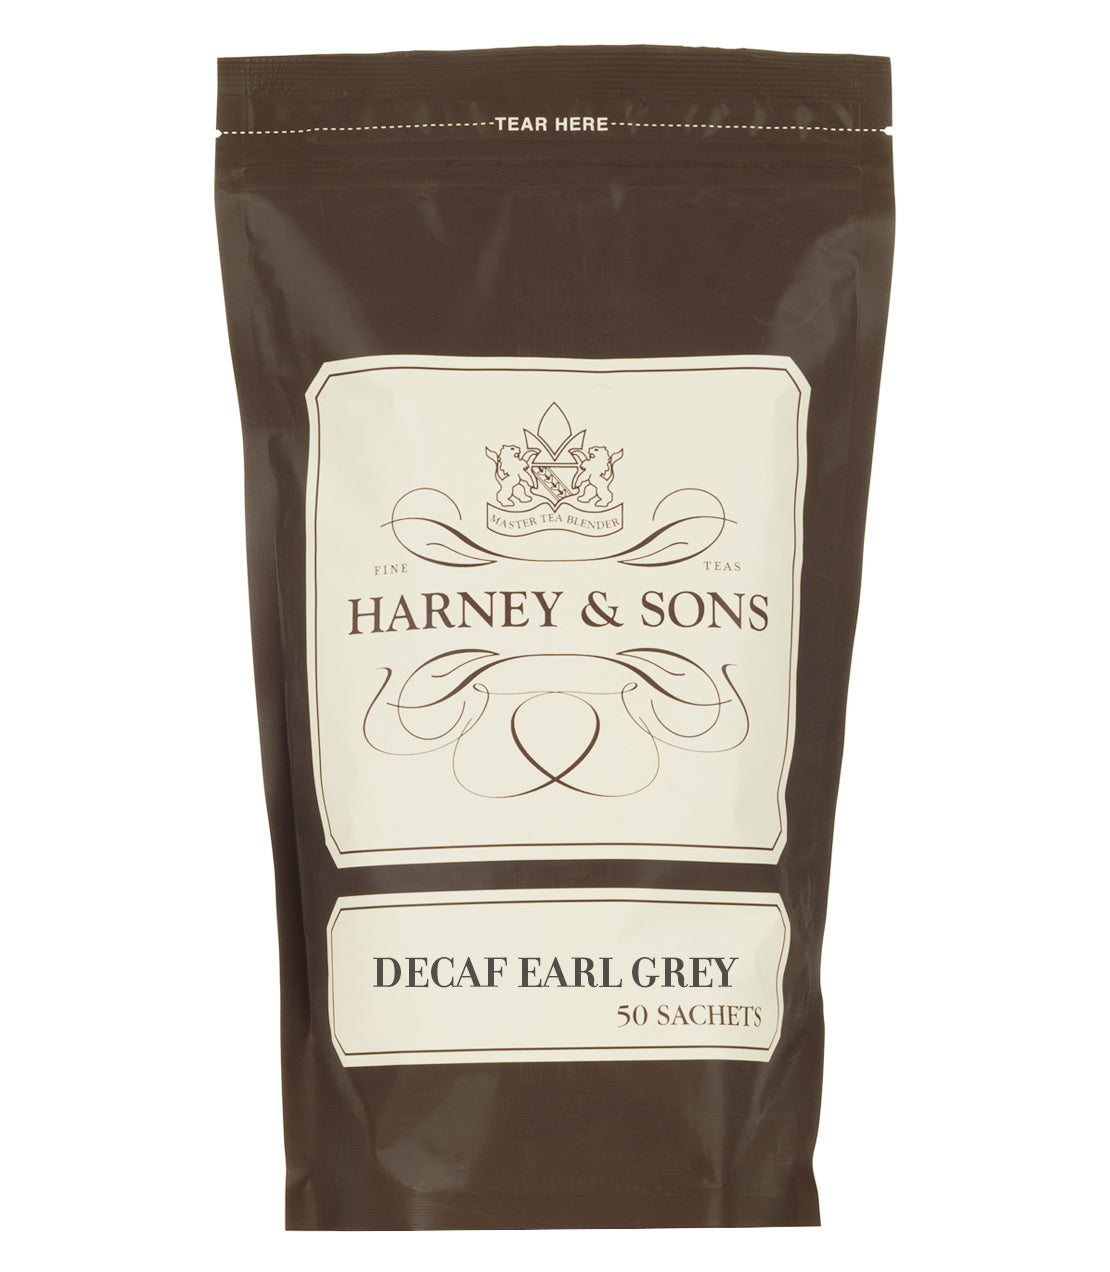 Decaf Earl Grey - Sachets Bag of 50 Sachets - Harney & Sons Fine Teas